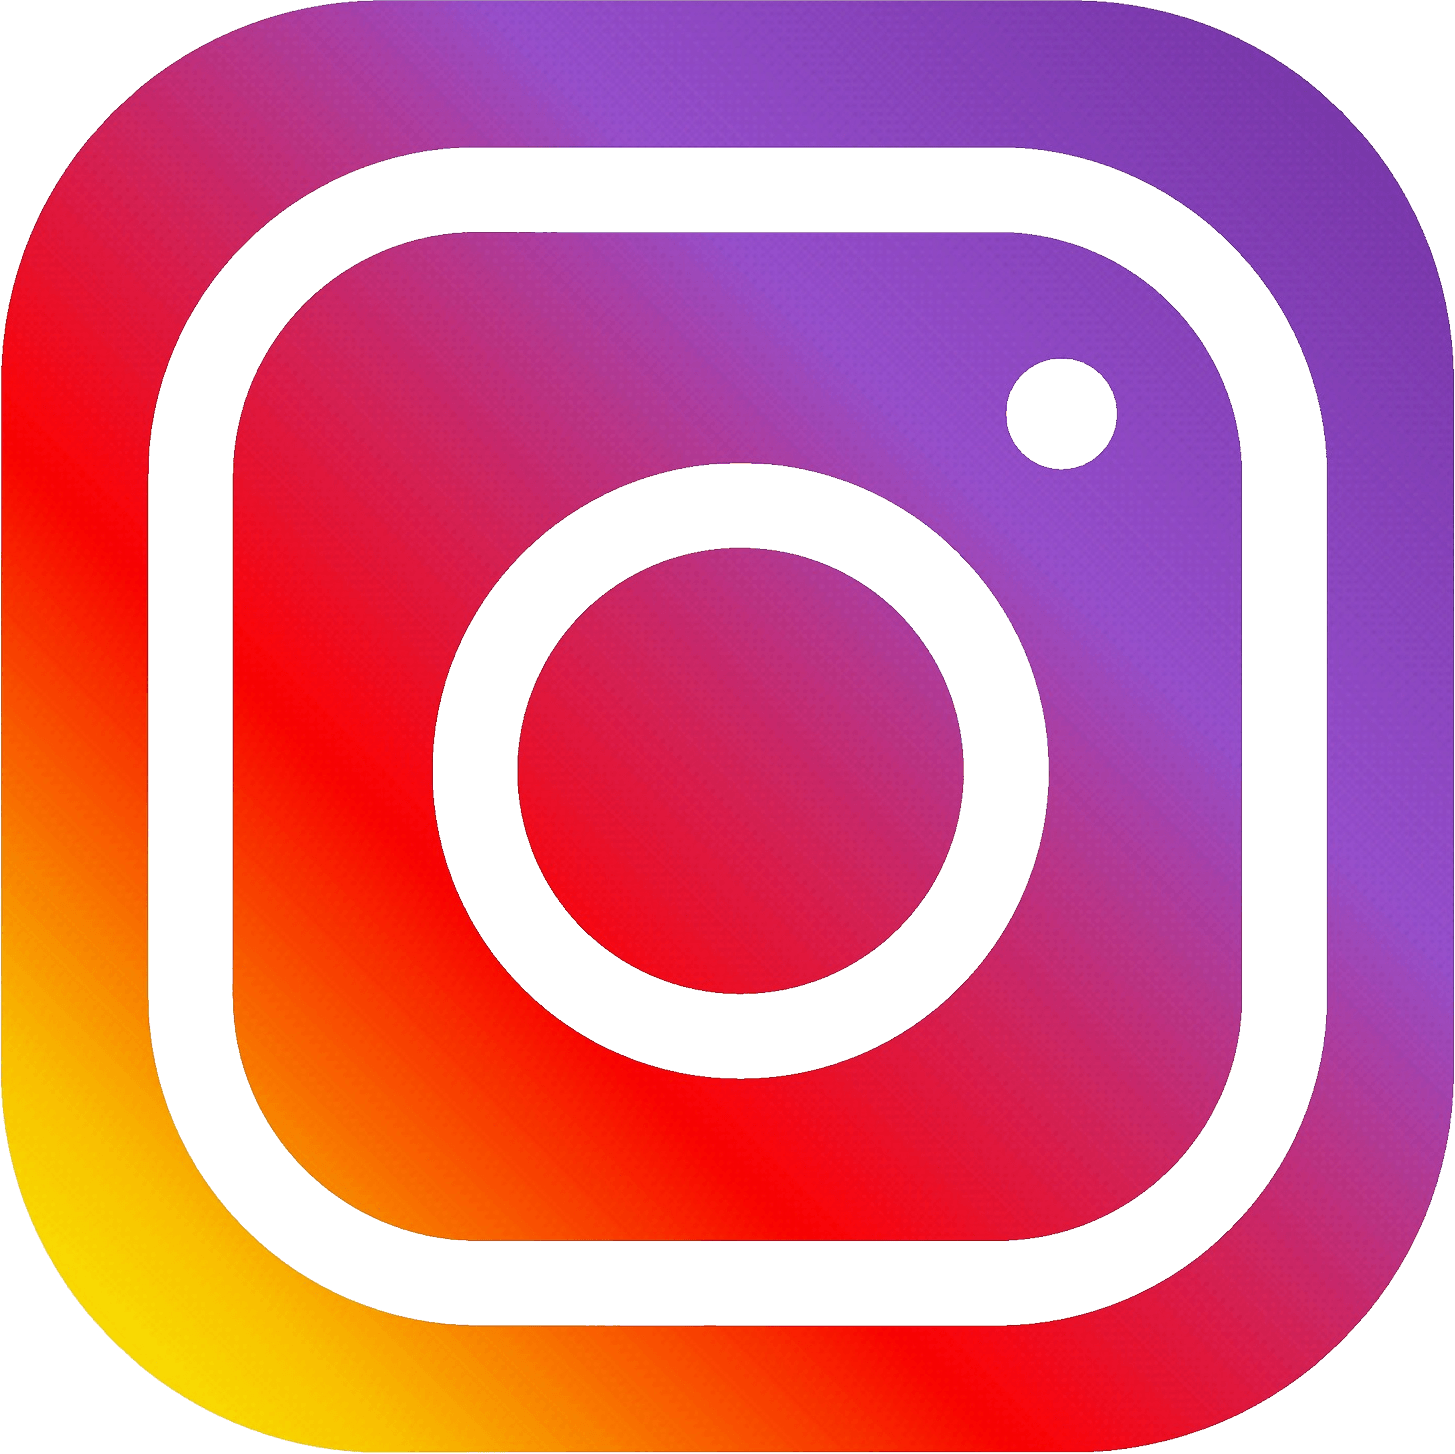 Intstagram Logo - HQ Instagram PNG Transparent Instagram.PNG Images. | PlusPNG